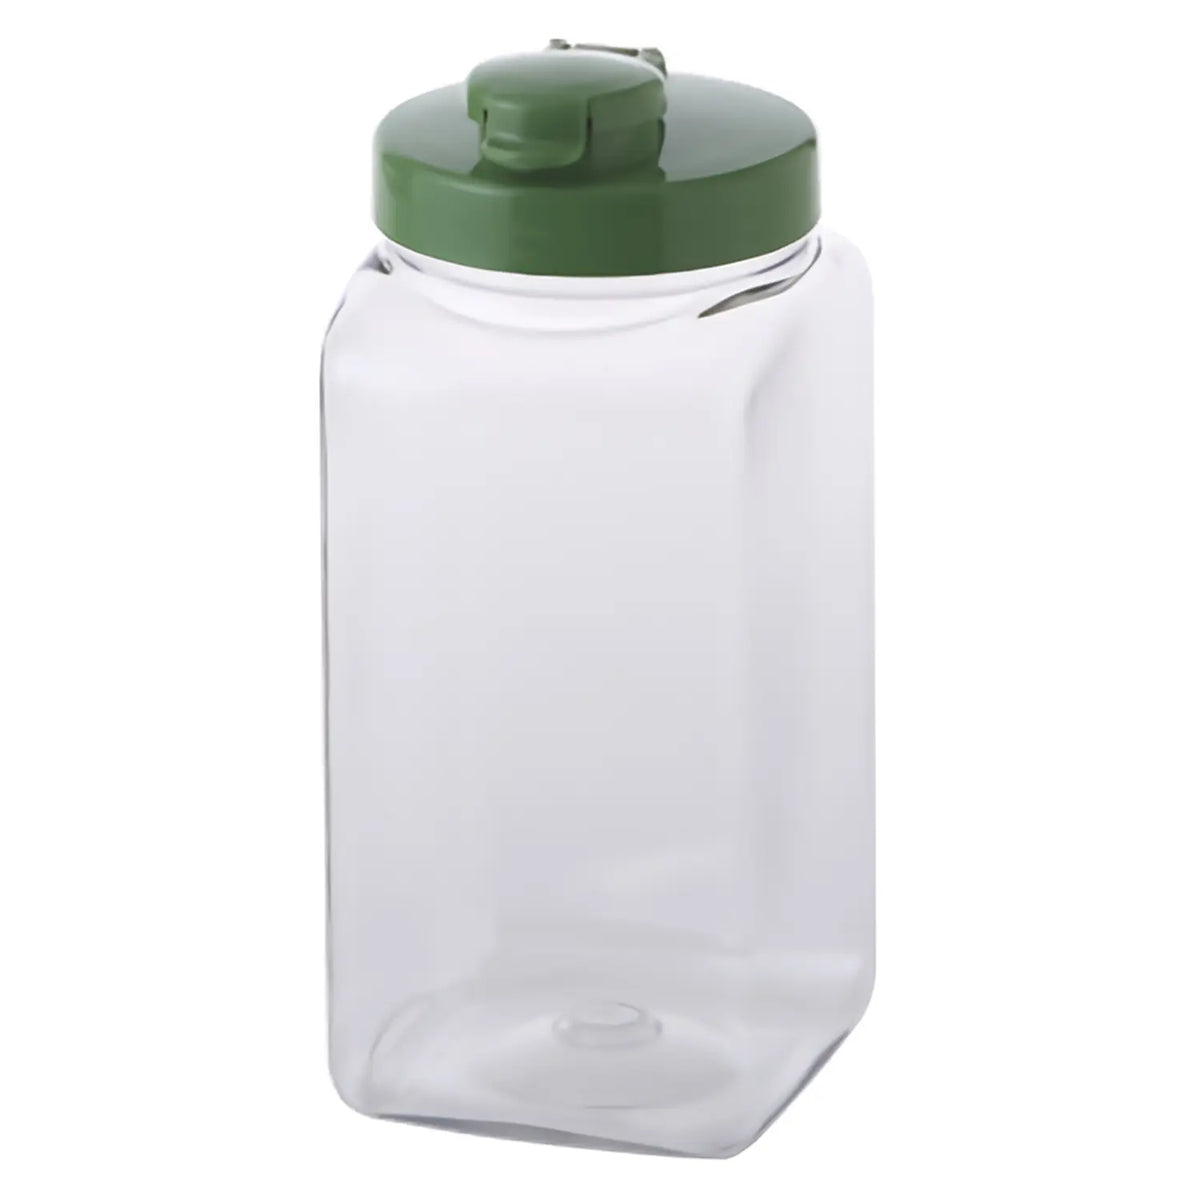 TAKEYA Polyethylene Terephthalate Sealed Square Fruit Liquor Bottle